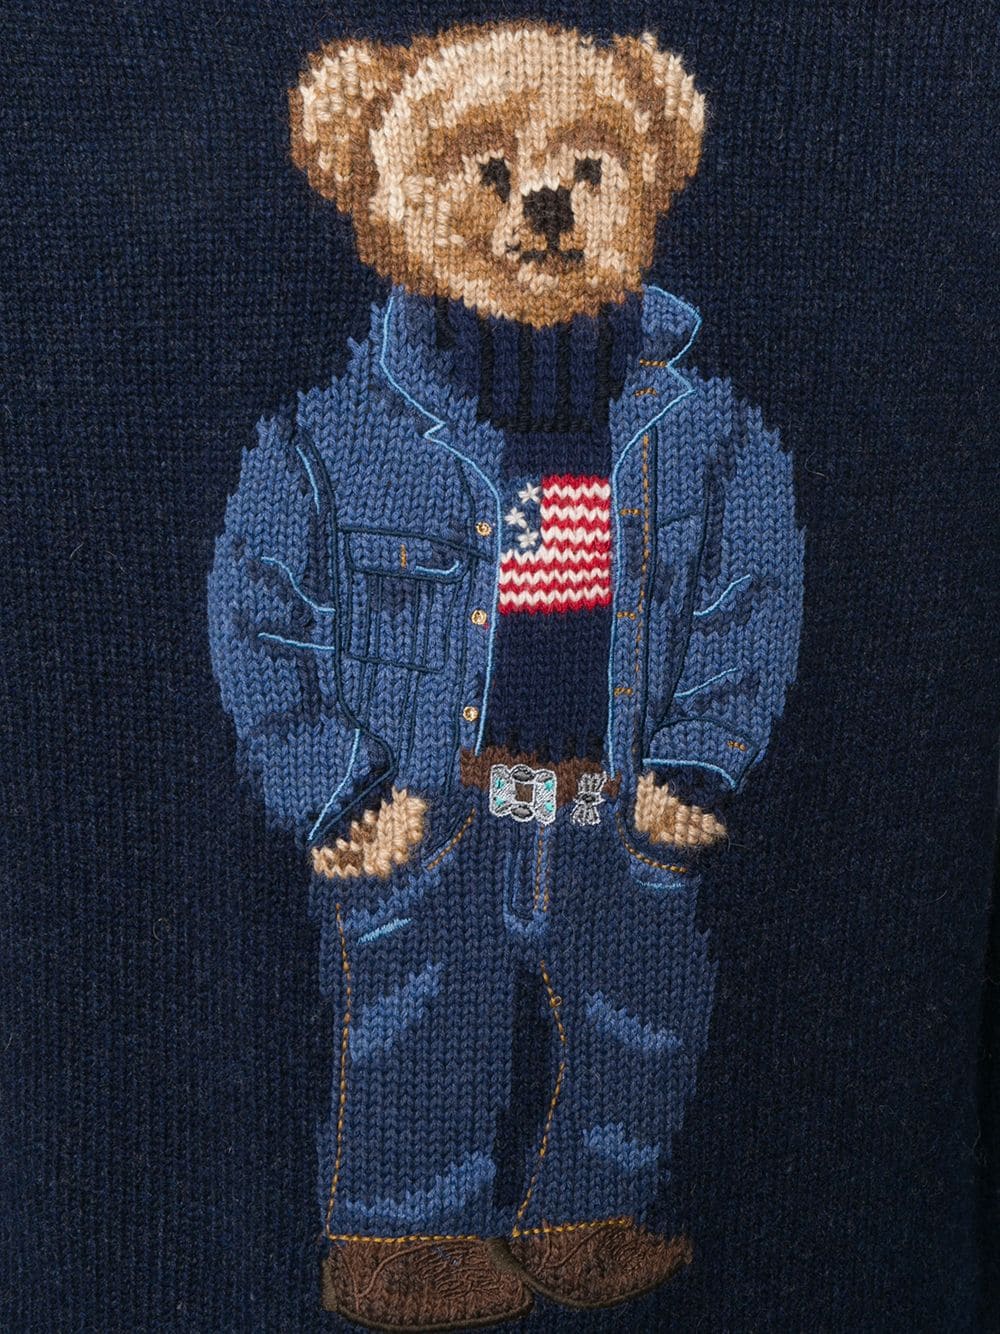 ralph lauren teddy bear knit